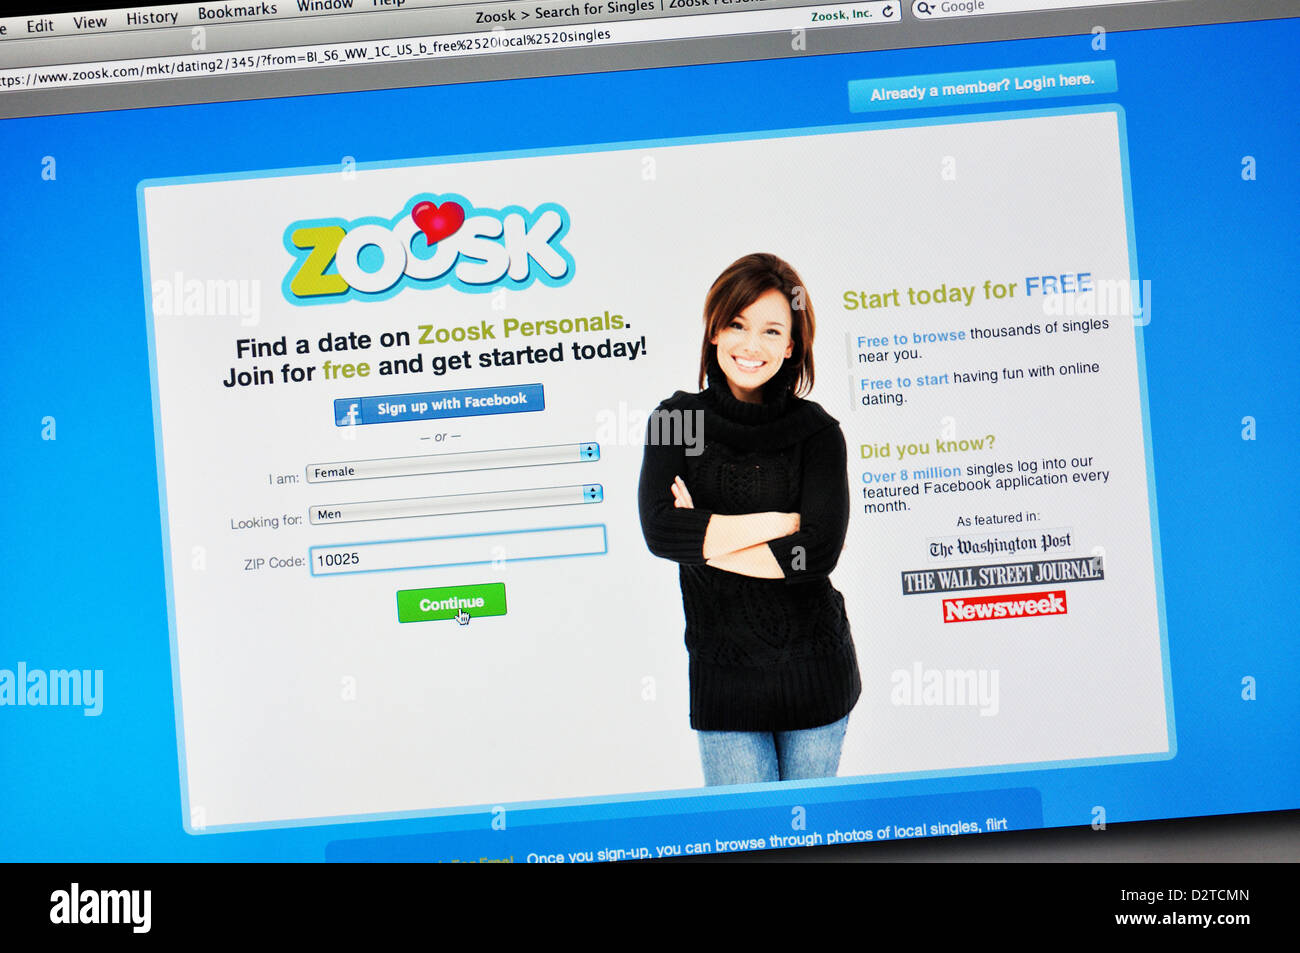 Zoosk online dating website Stock Photo